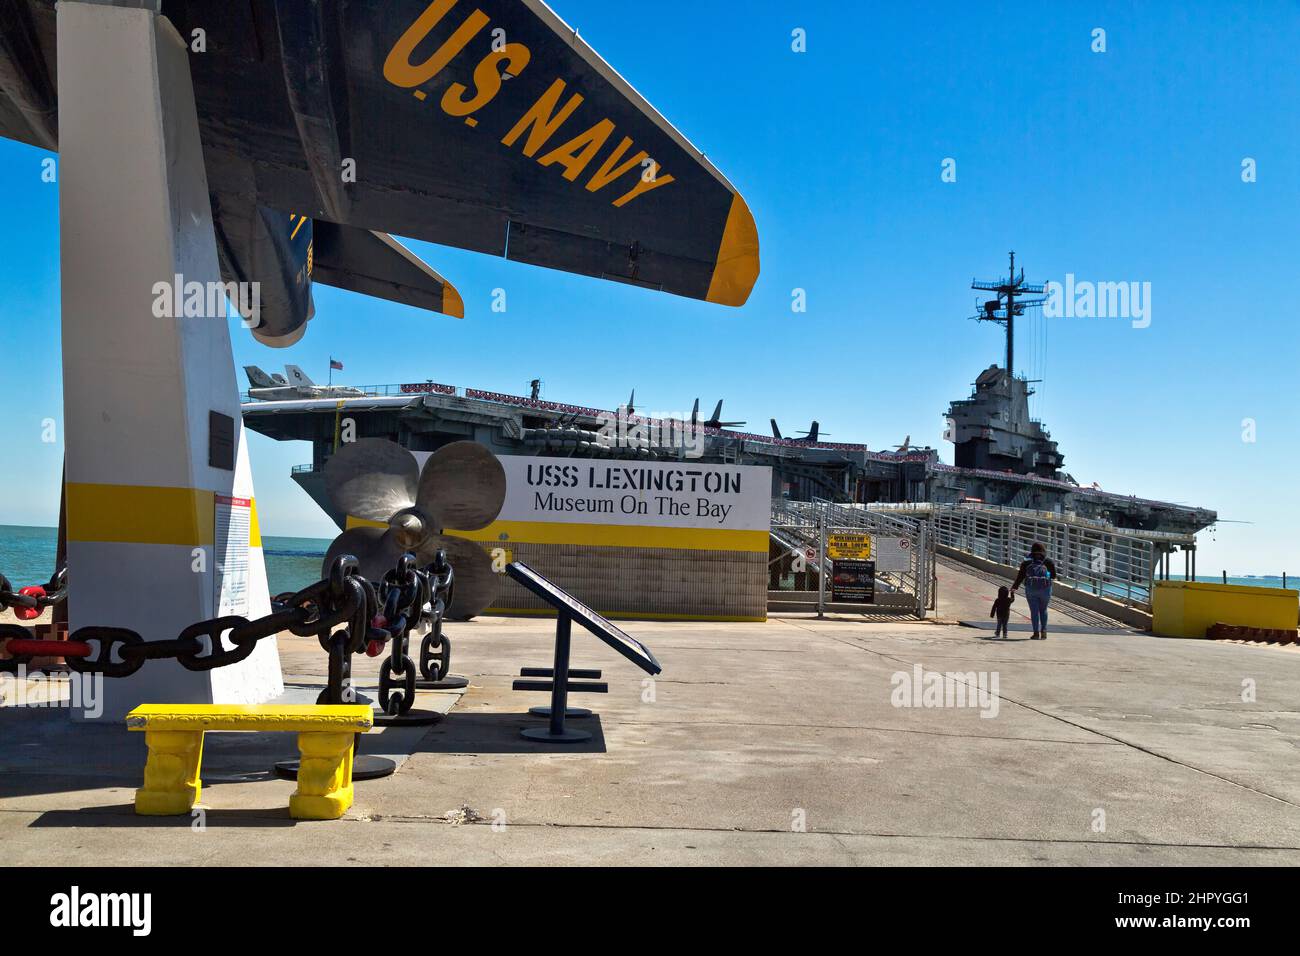 USS Lexington WW2 Aircraft Carrier (CV16) 'Museum On The Bay', A-4 Skyhawk  fighter jet aircraft. Stock Photo